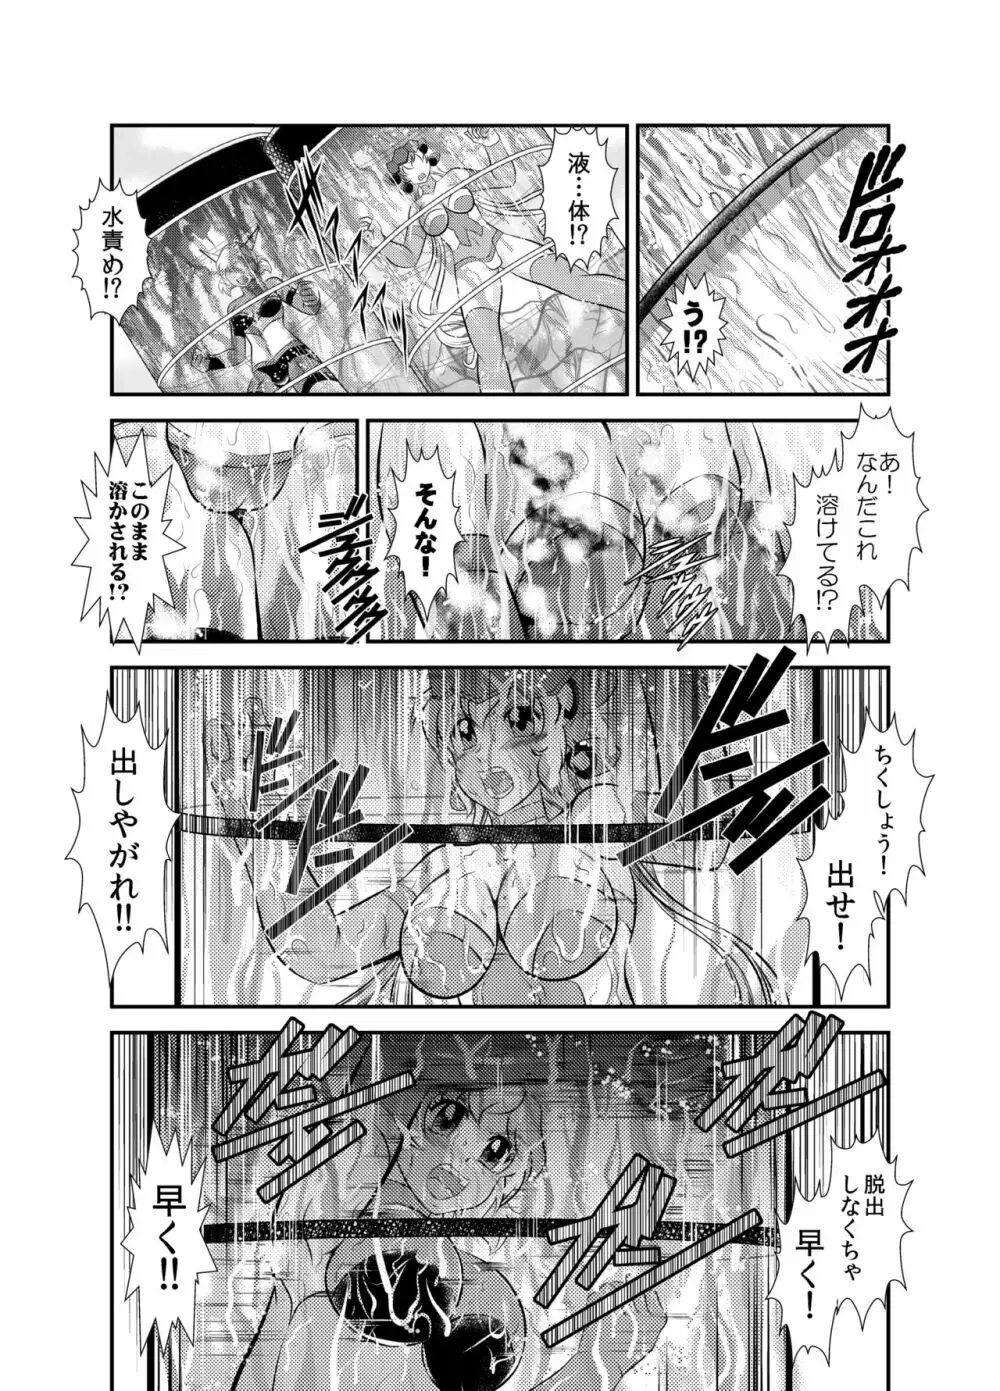 戦姫全滅 EP2:立花響&雪音クリス 11ページ